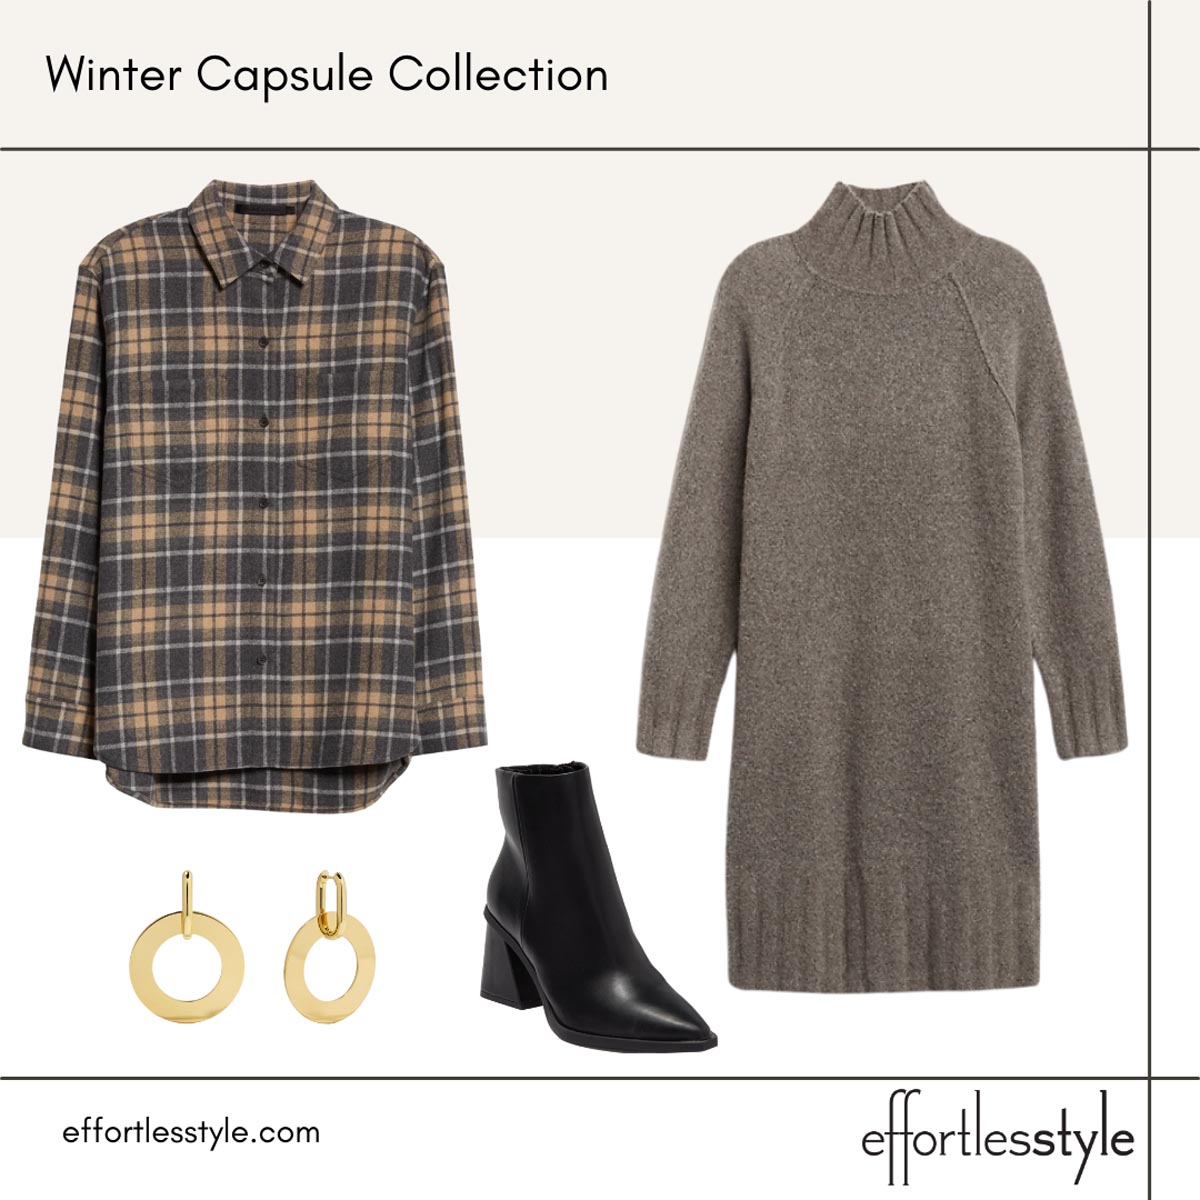 Women's Winter Capsule Wardrobe Sweater Dress Looks How to Wear